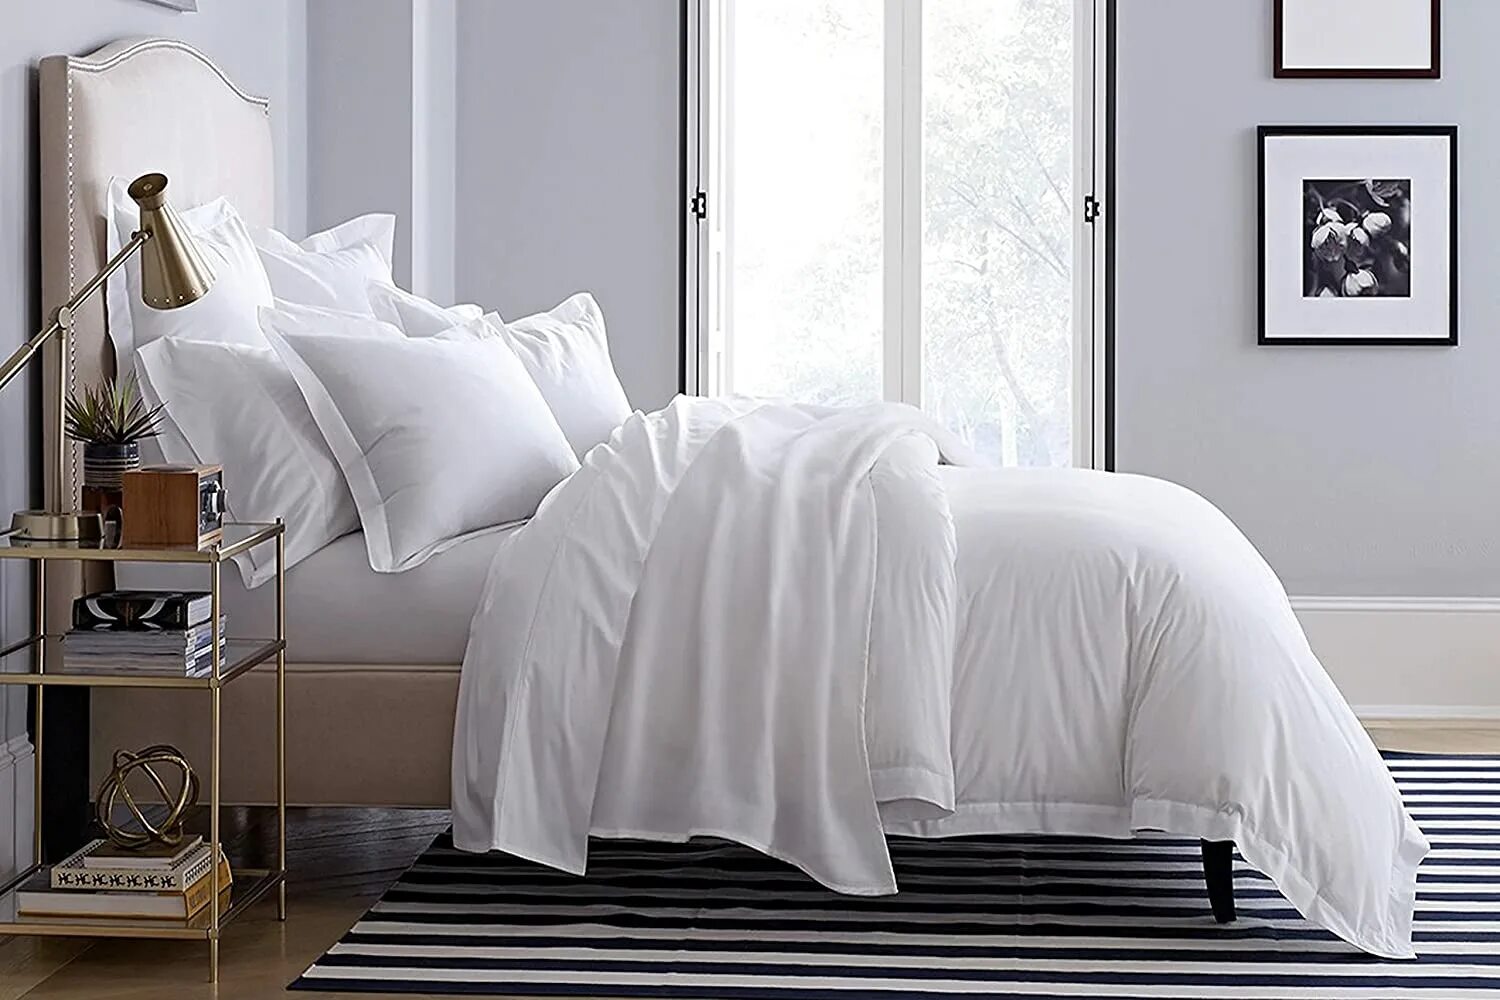 Постель ровно. Duvet Cover Set постельное белье. Кровать с белым постельным бельем. Белая простыня. Кровать с белой простыней.